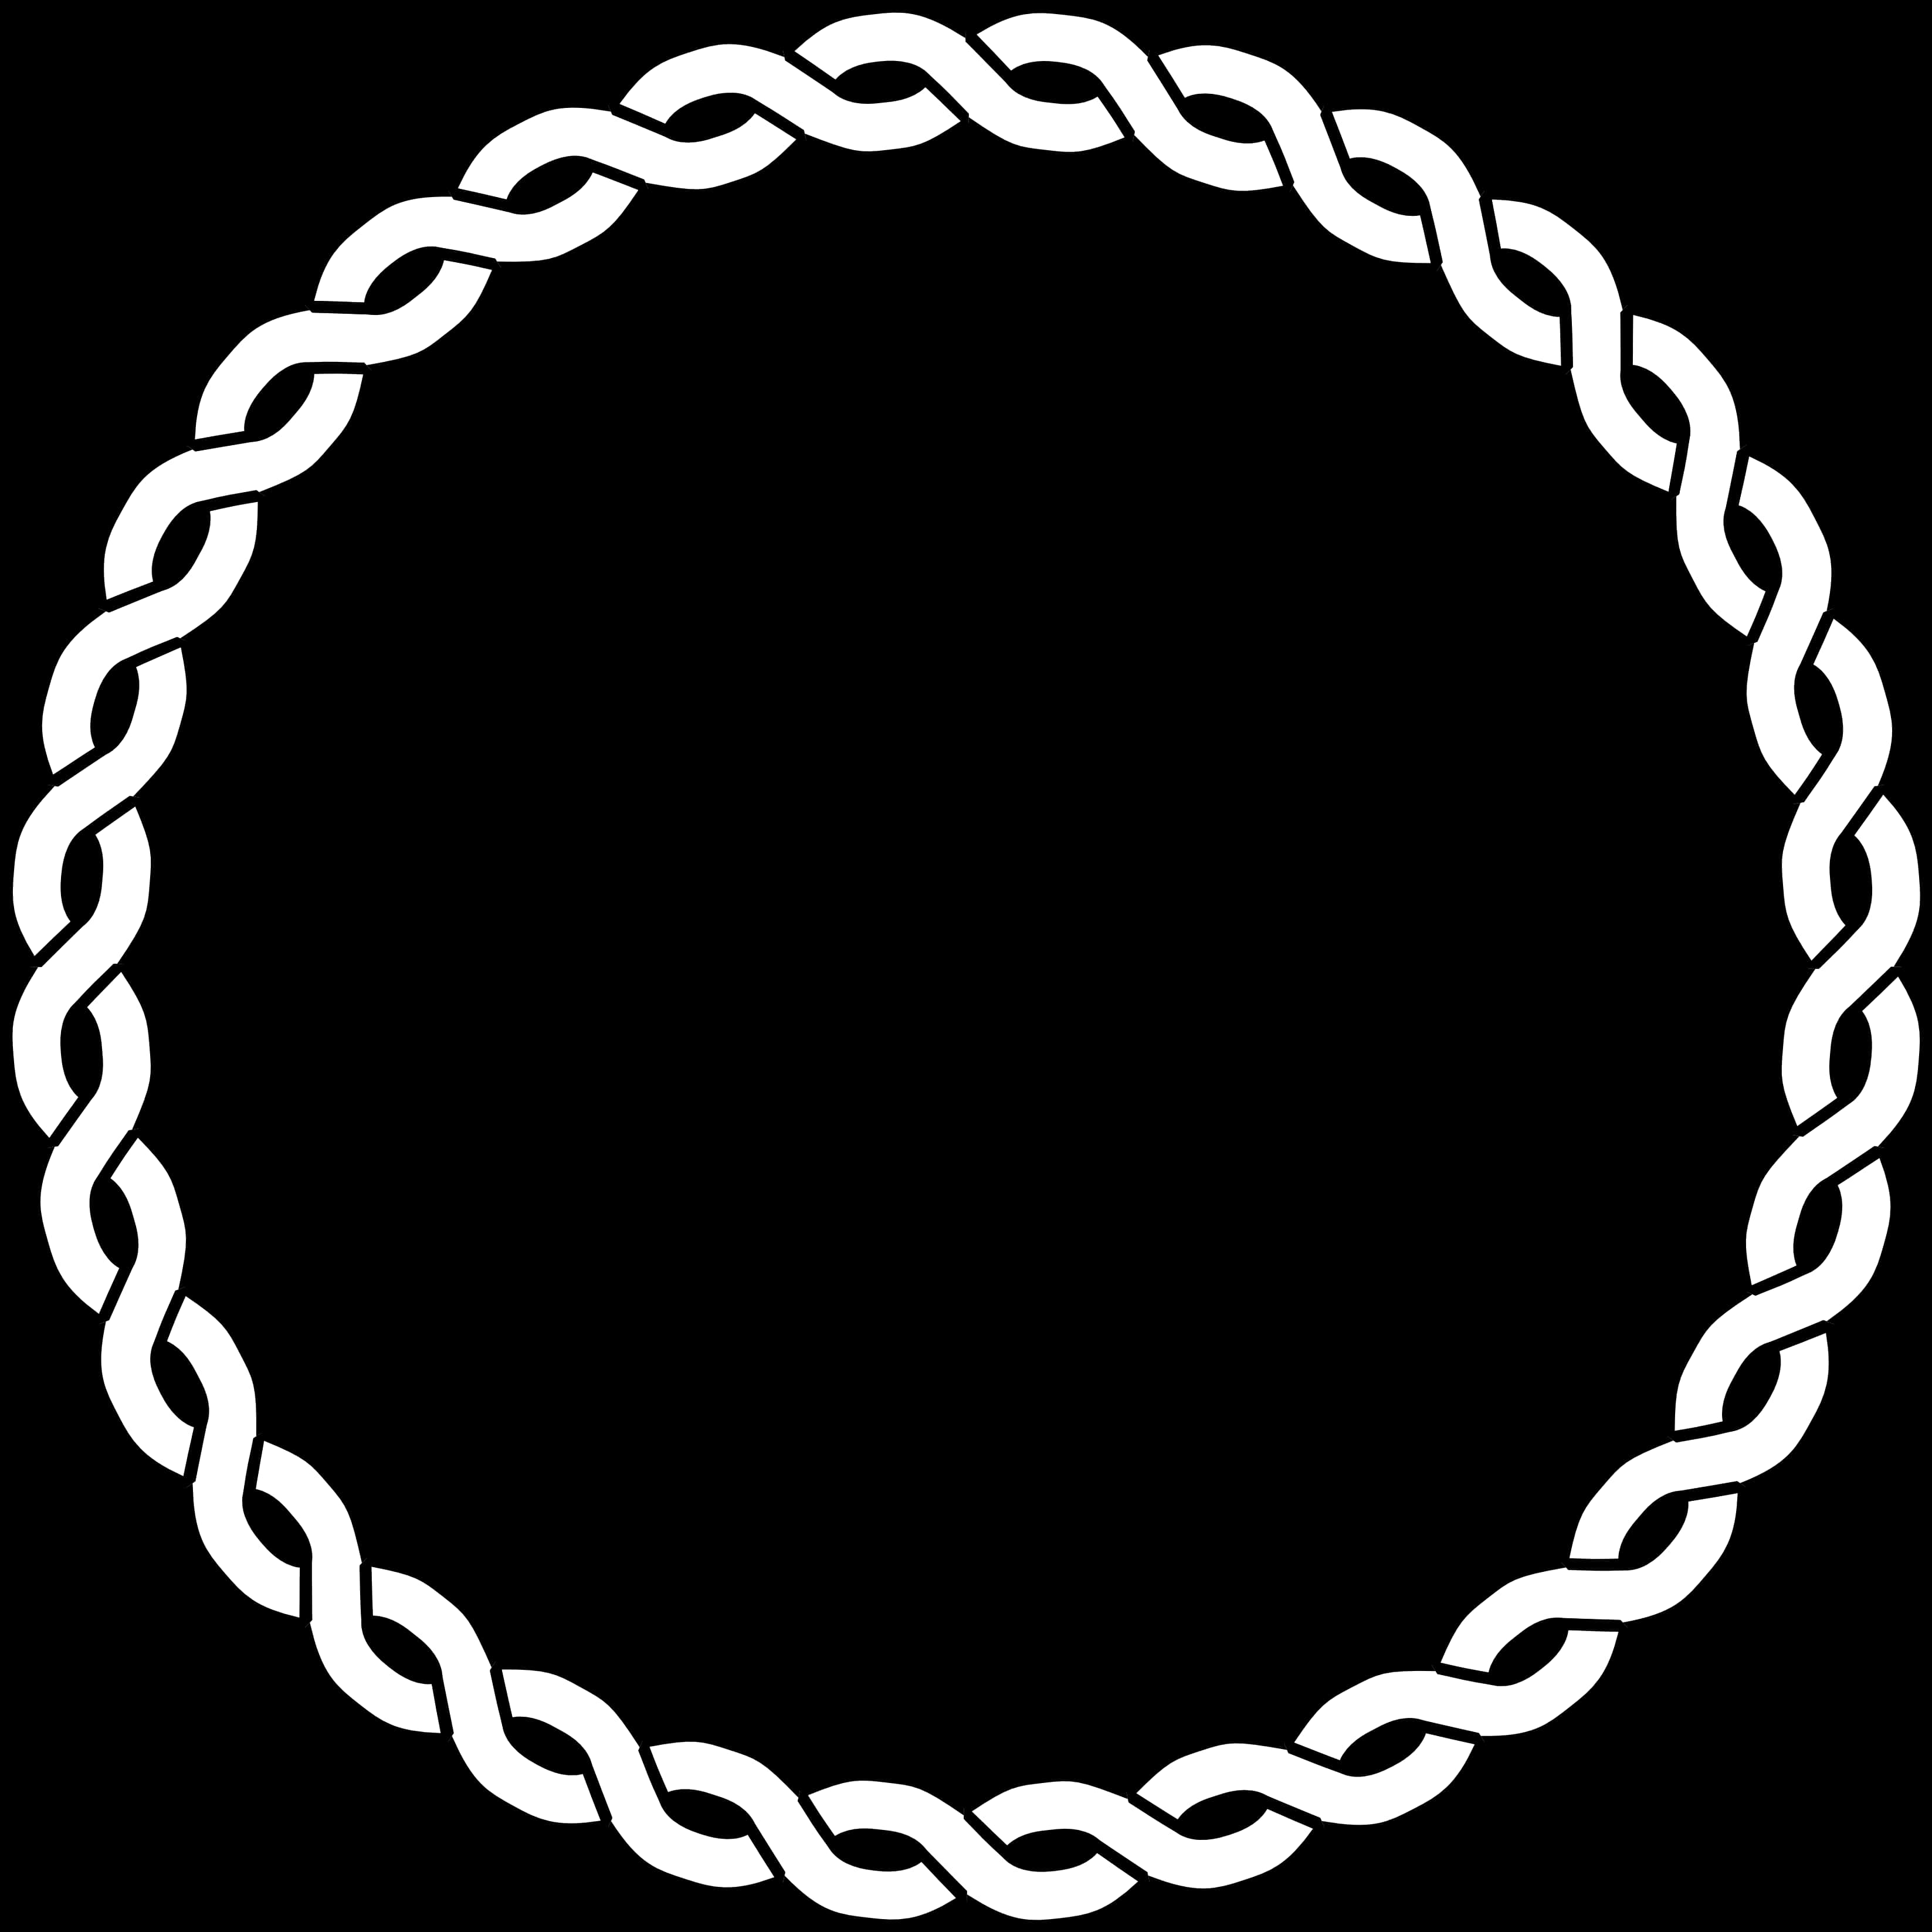 White Chain Circle Graphic